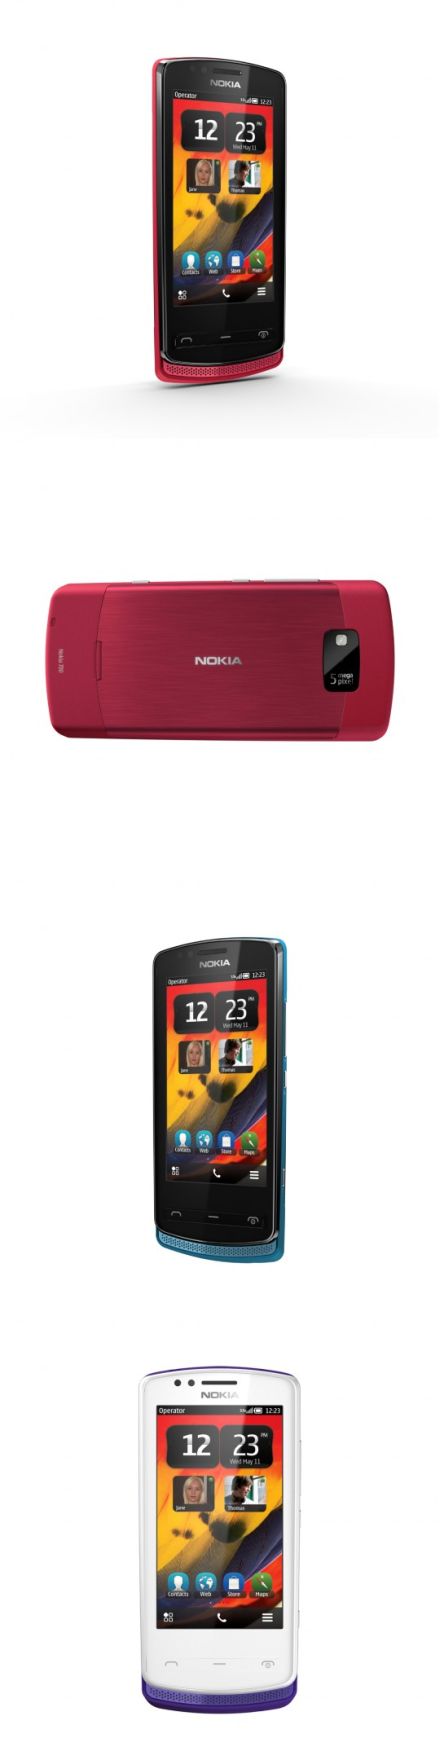 Nokia 700: a világ legkisebb okostelefonja